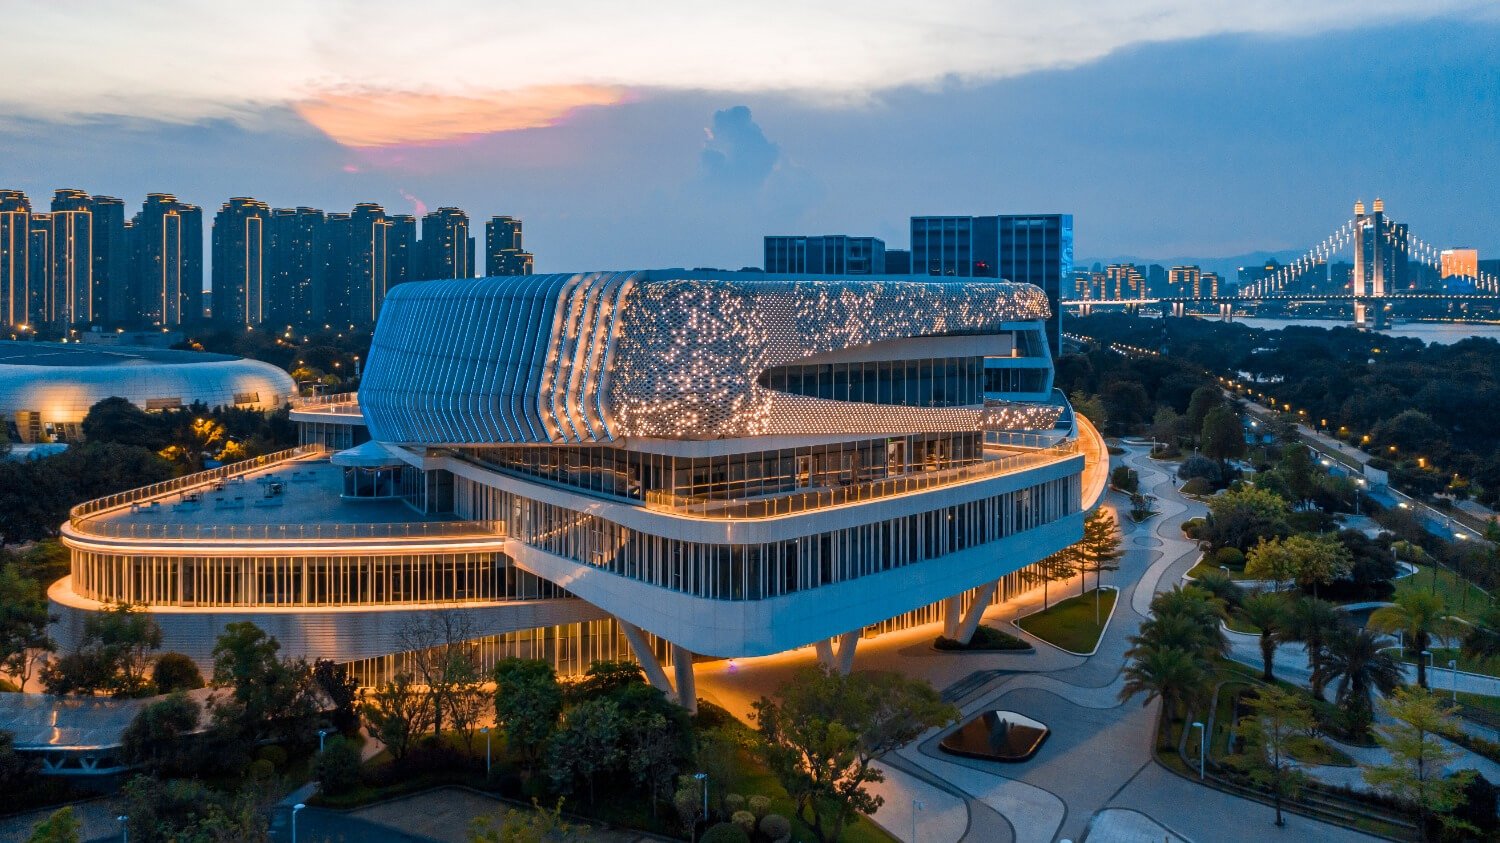 Fuzhou Exhibition Waterfront Complex